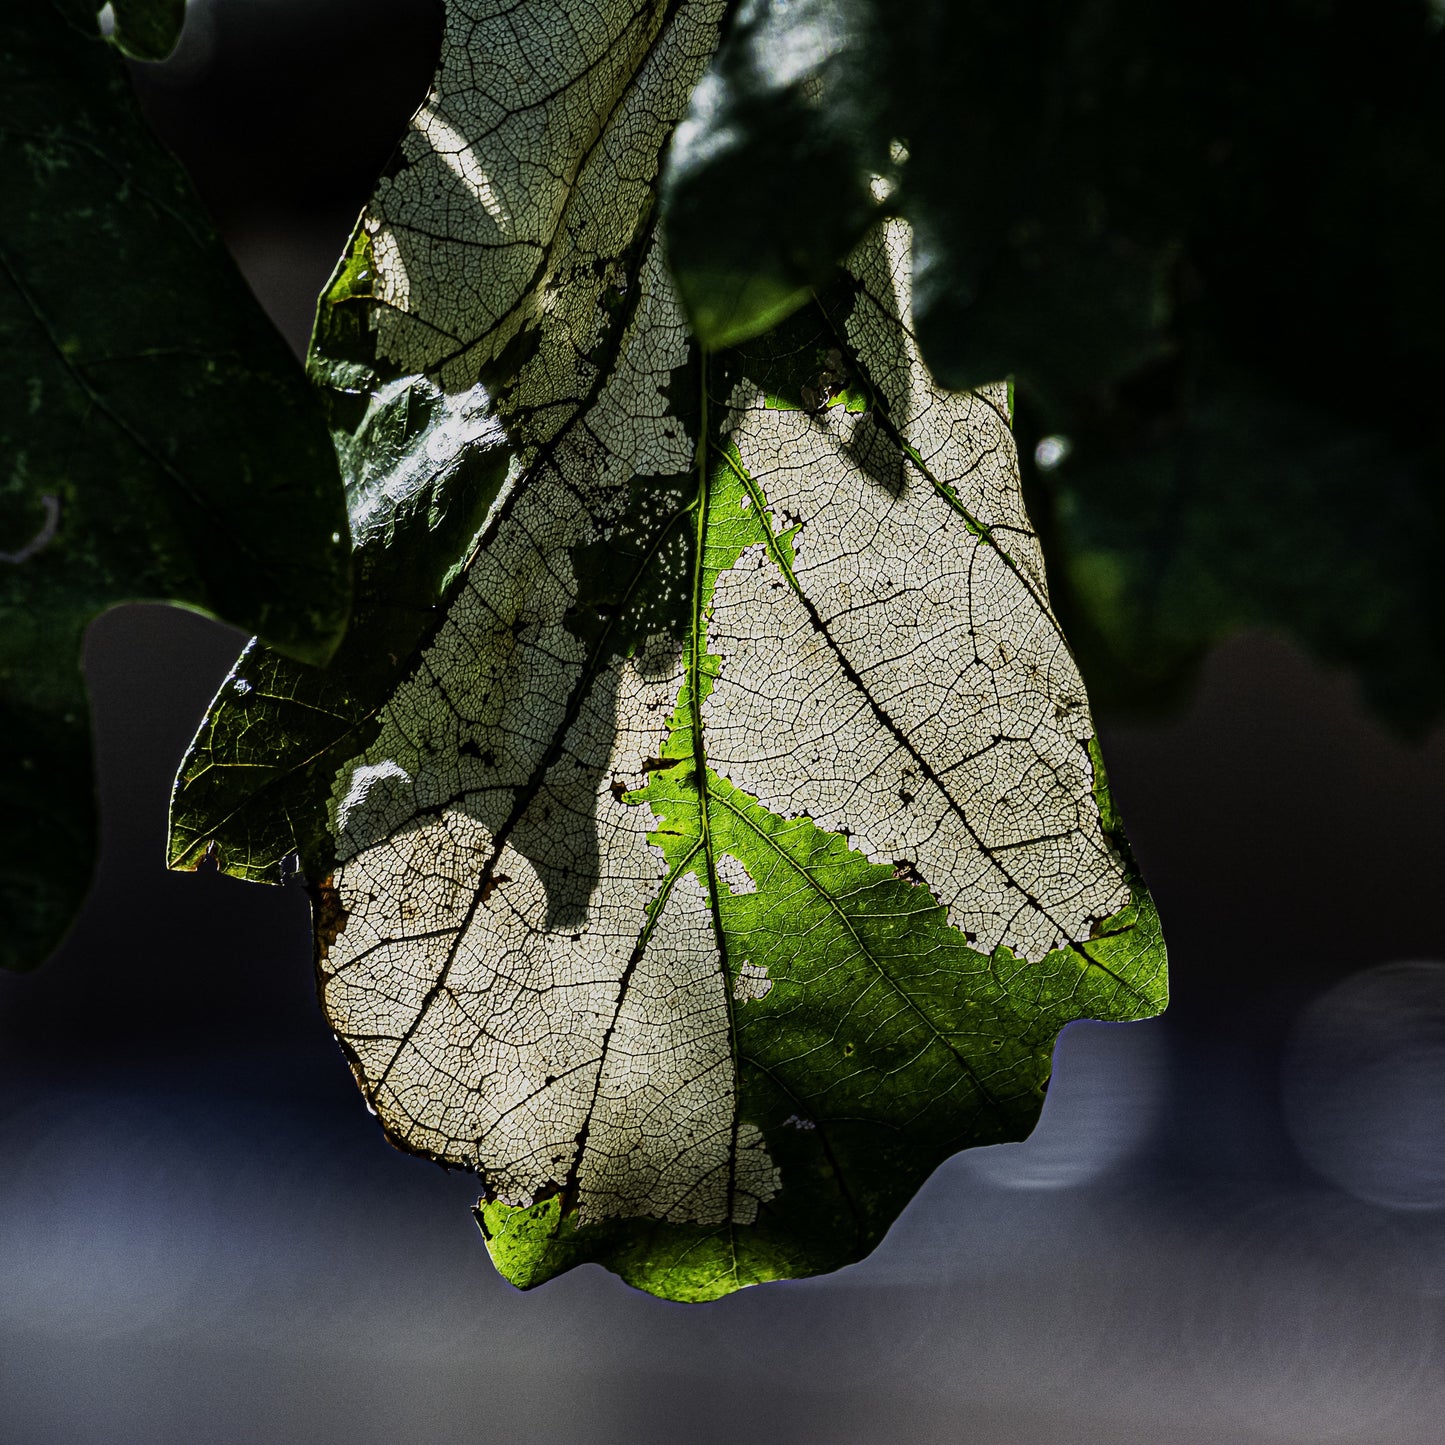 Intricacies of a Leaf